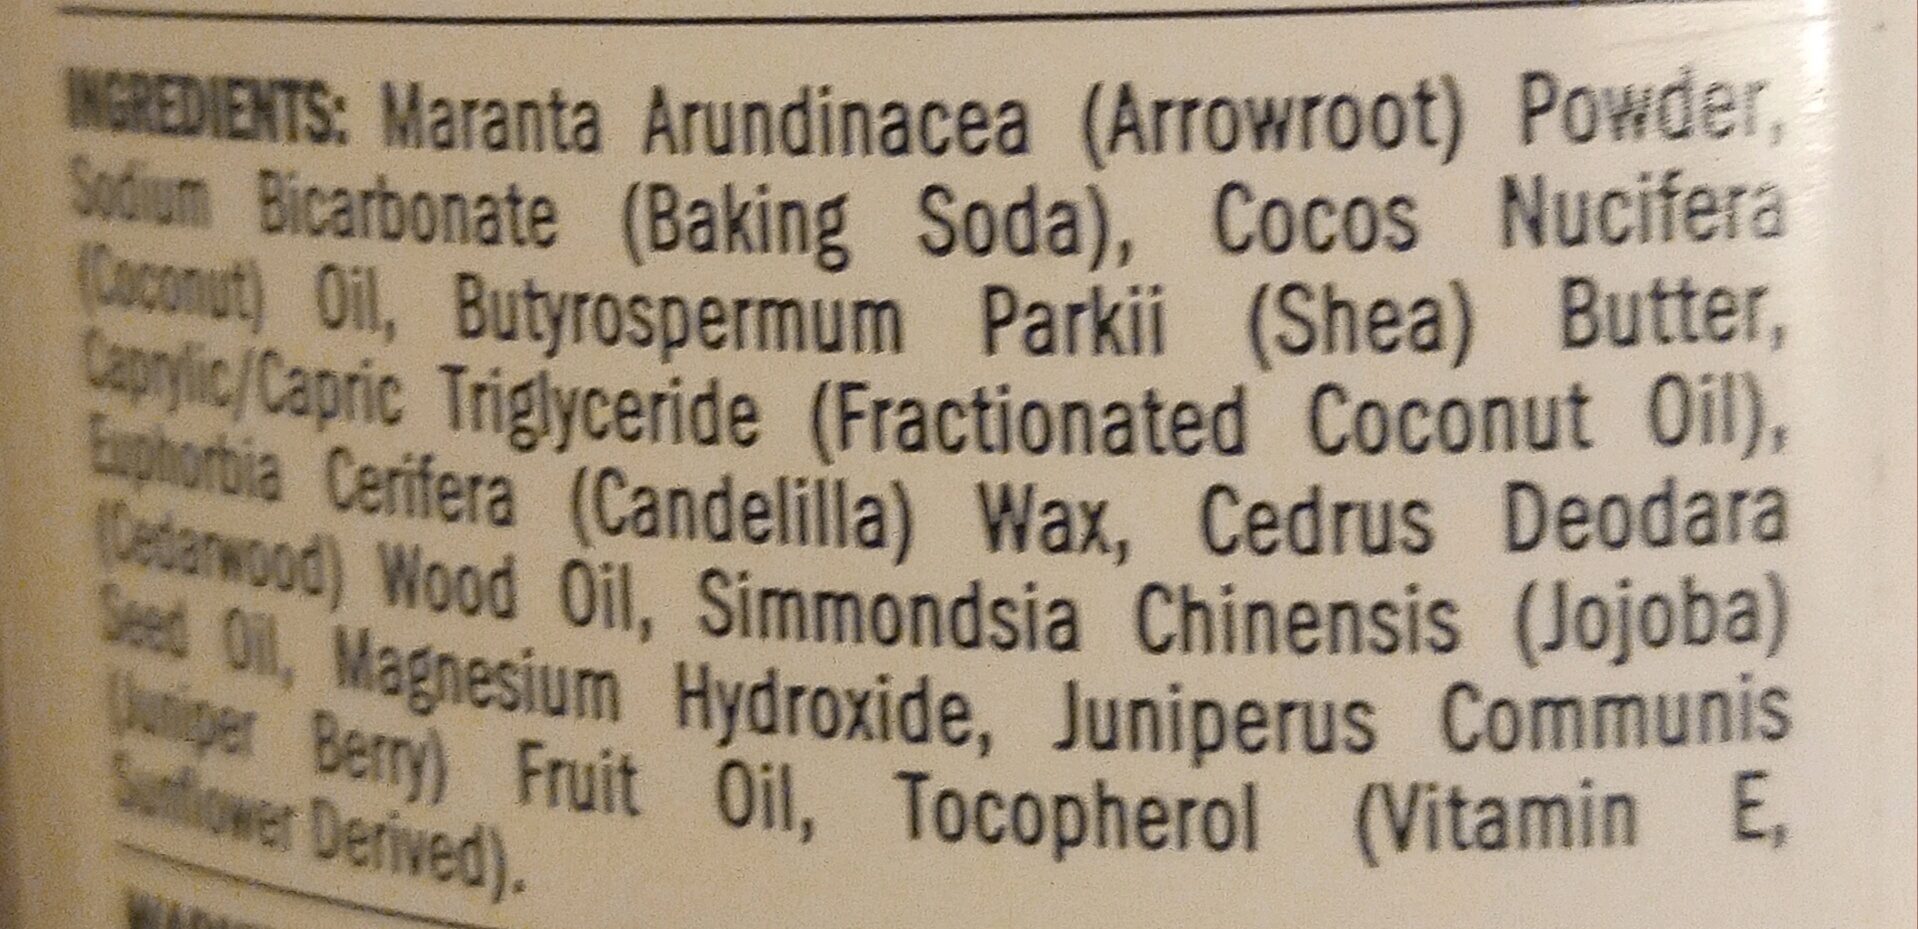 Cedarwood+Janiper deodorant - Ingredients - en